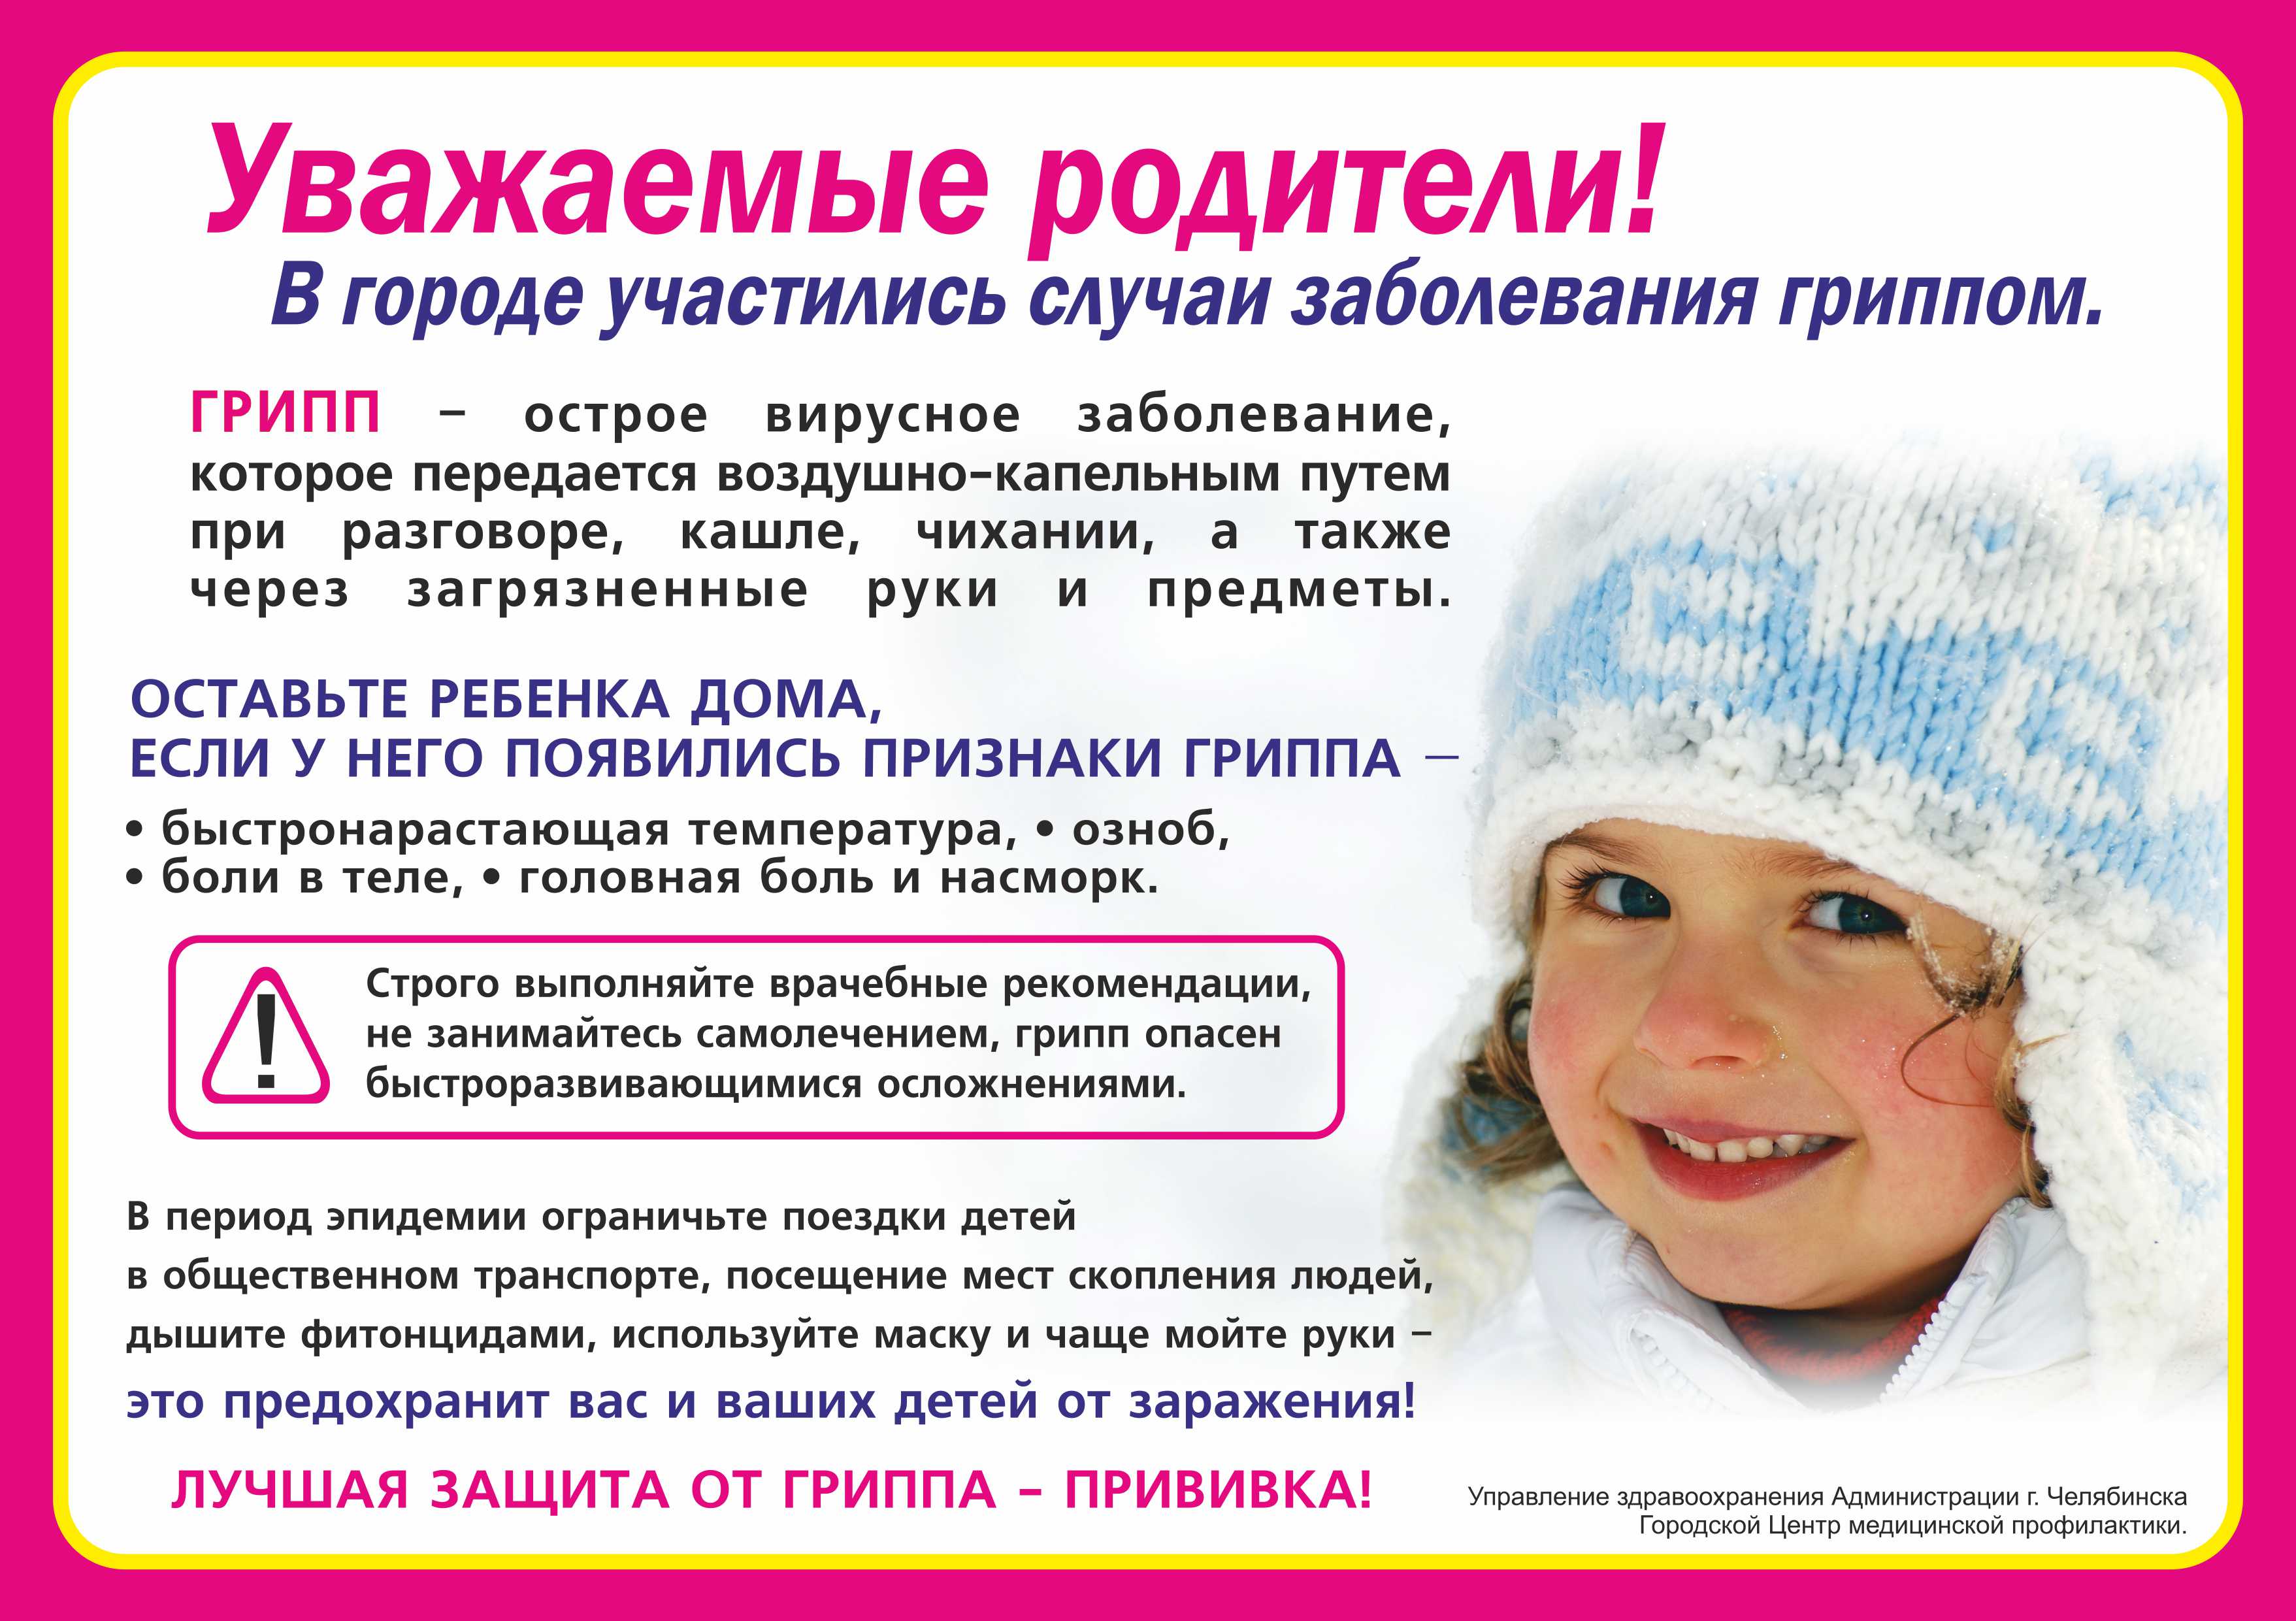 Прививка при кашле можно. Профилактика простудных заболеваний зимой. Уважаемые родители дети с признаками ОРВИ. Профилактика при гриппе. Профилактика ОРВИ памятка.